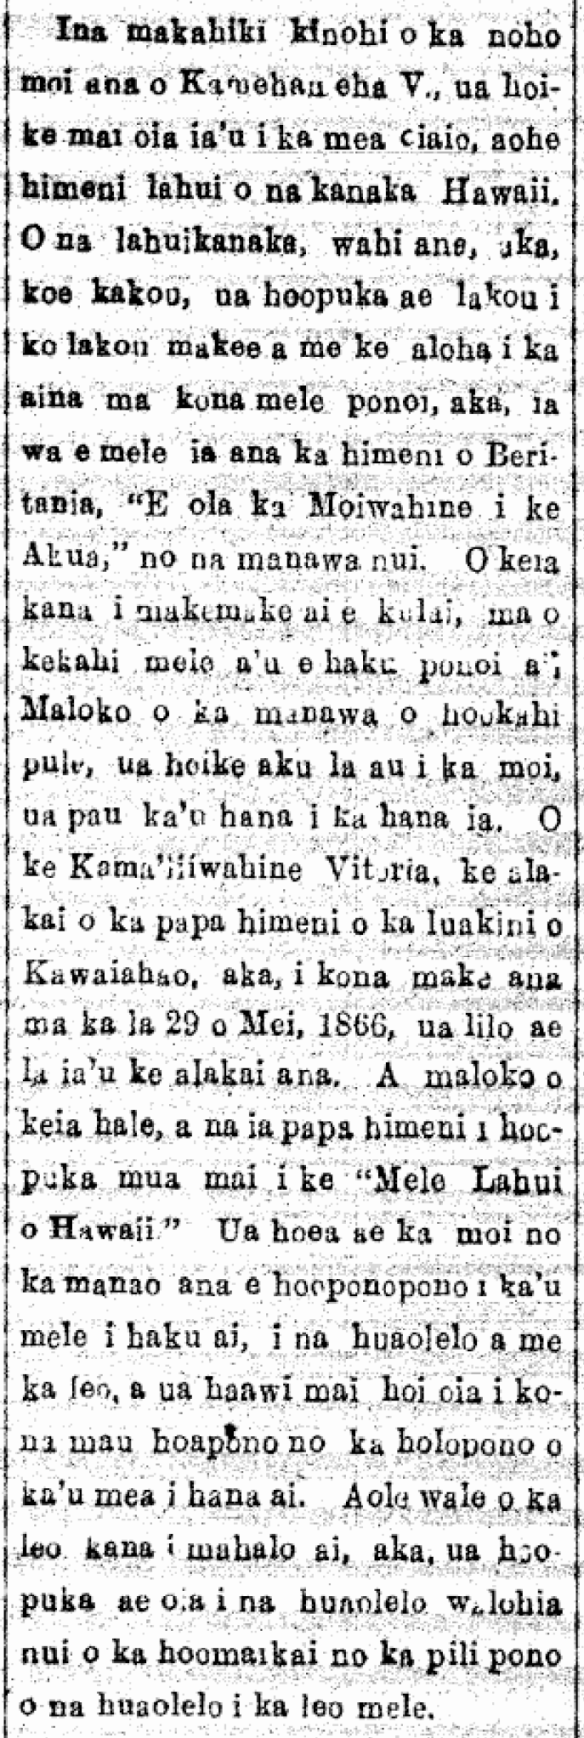 KA BUKE MOOLELO HAWAII I HAKUIA E KA Moiwahine Liliuokalani...